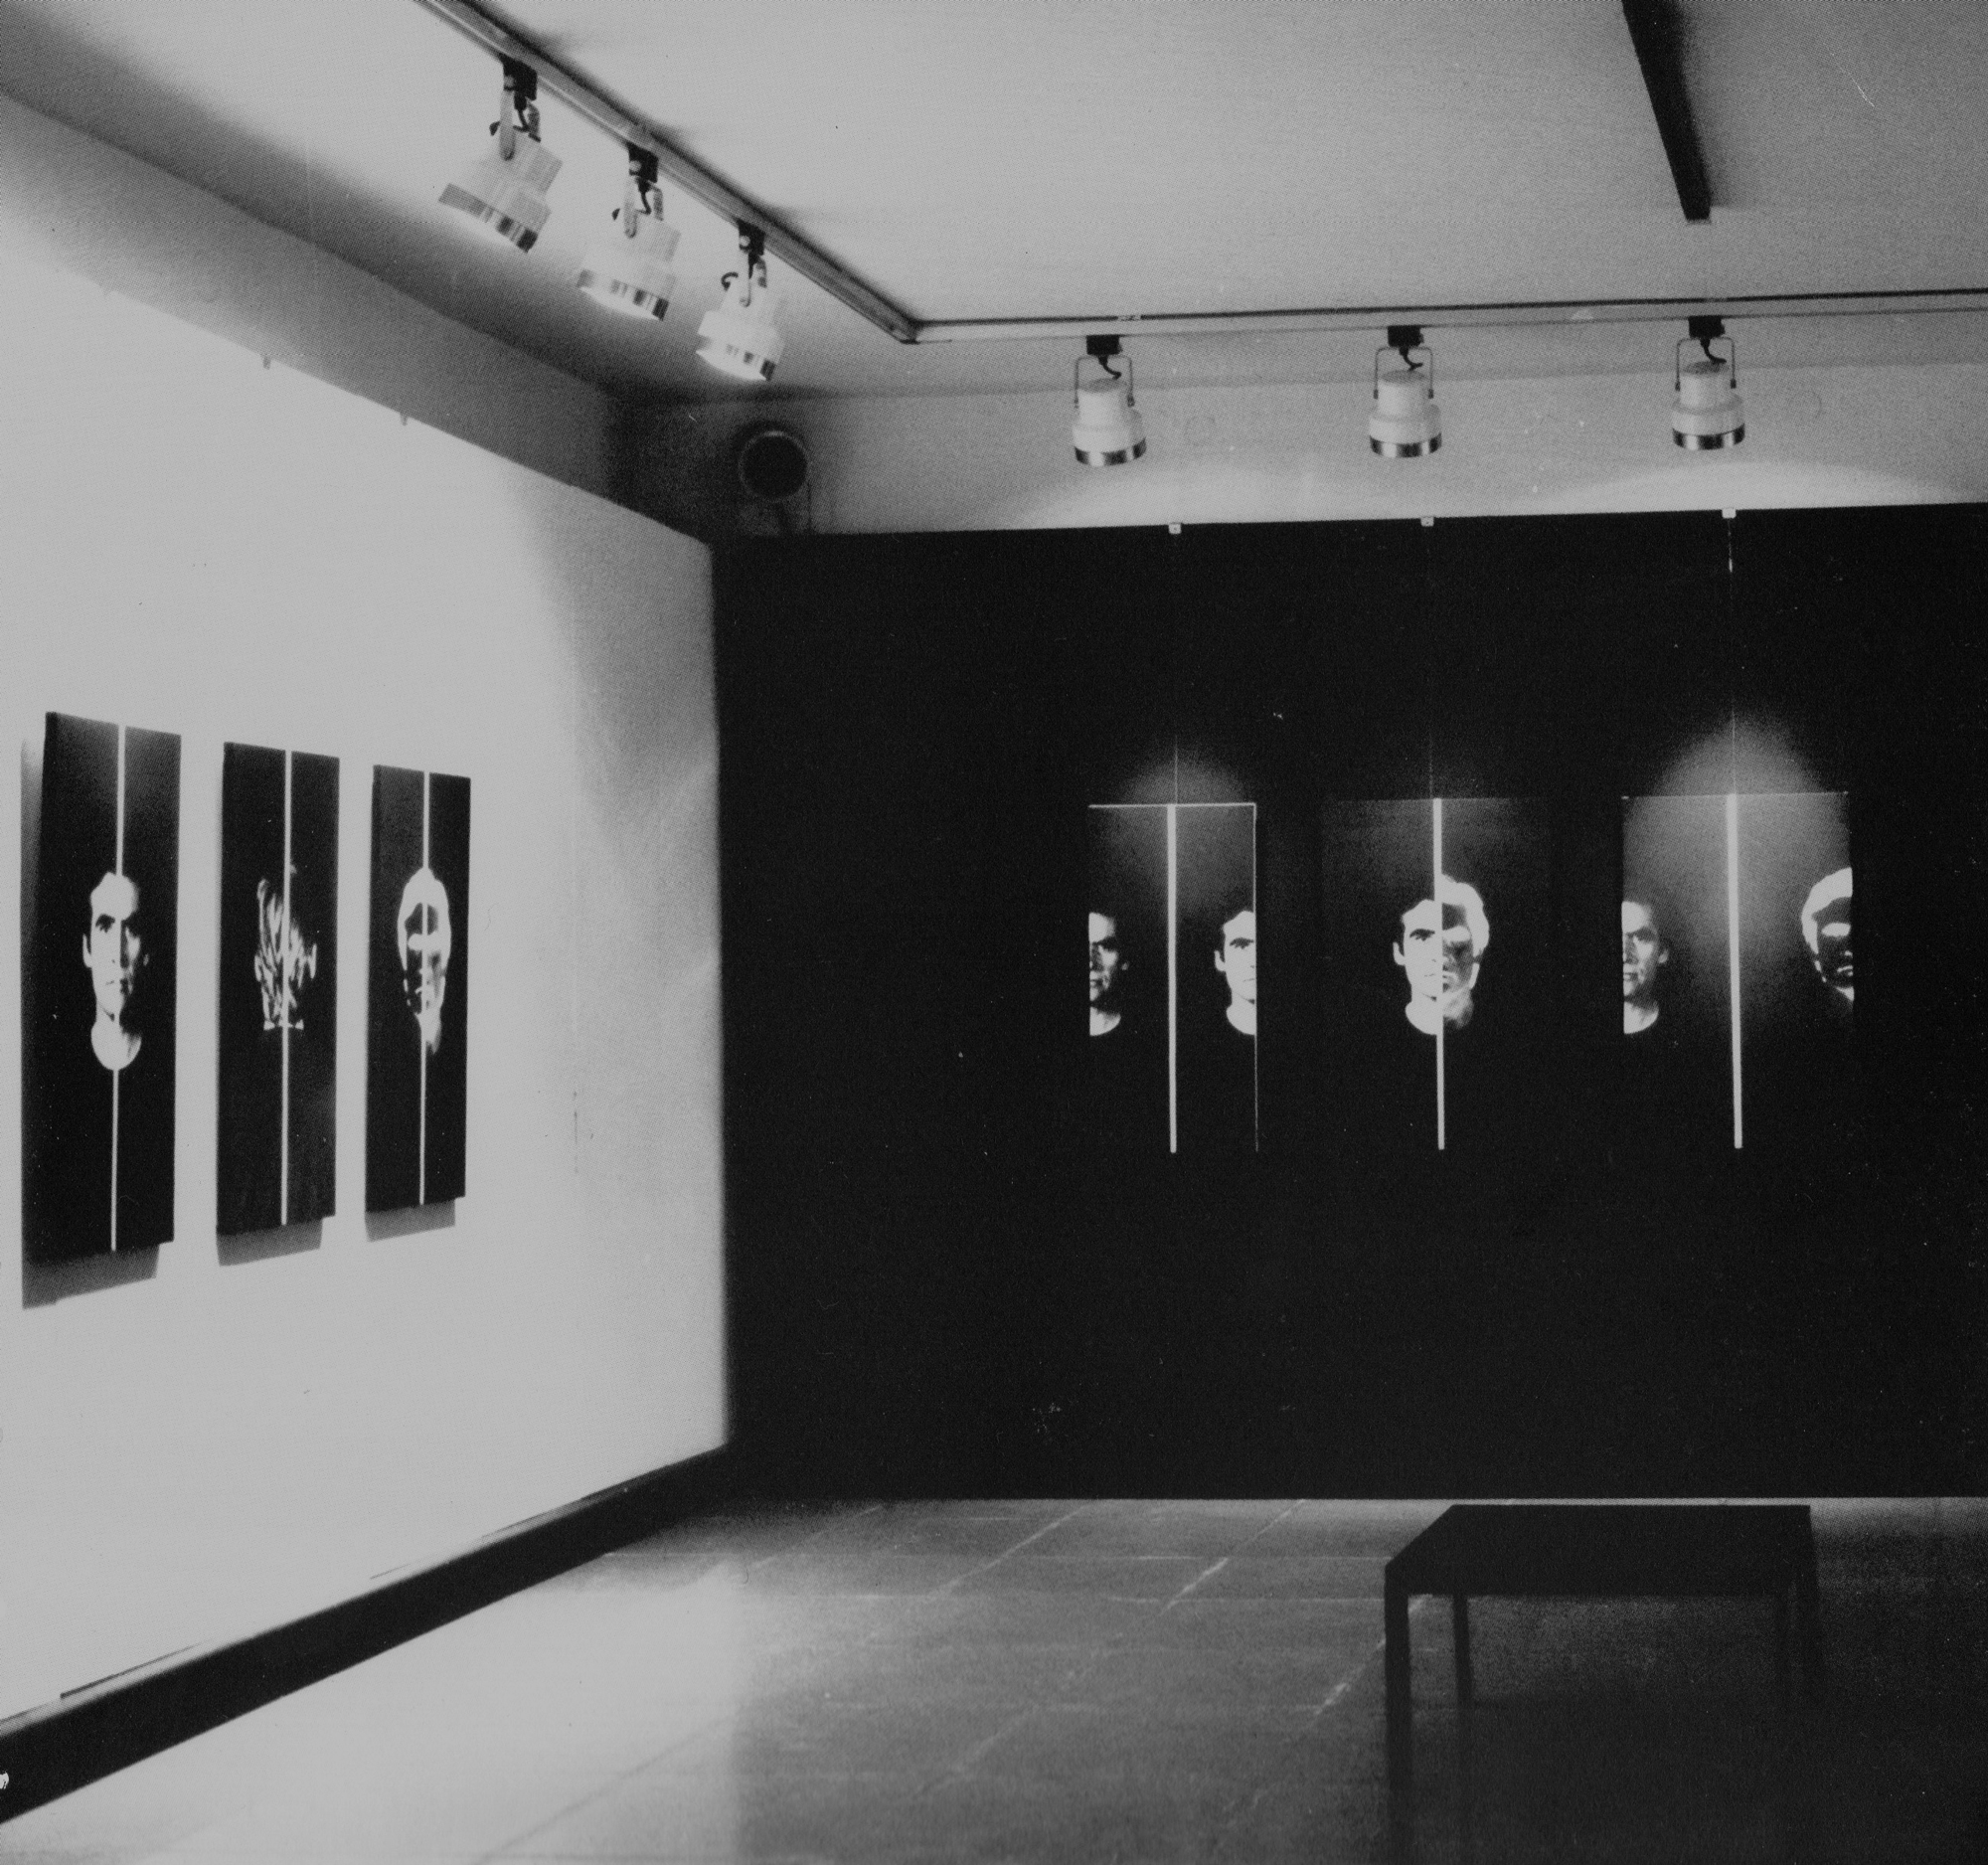 Aldo Tagliaferro, L’Io-Ritratto, Galleria del Cavallino, Venezia, 1979. Per tutte le fotografie pubblicate in questa pagina si ringrazia l'Archivio Aldo Tagliaferro, Parma.